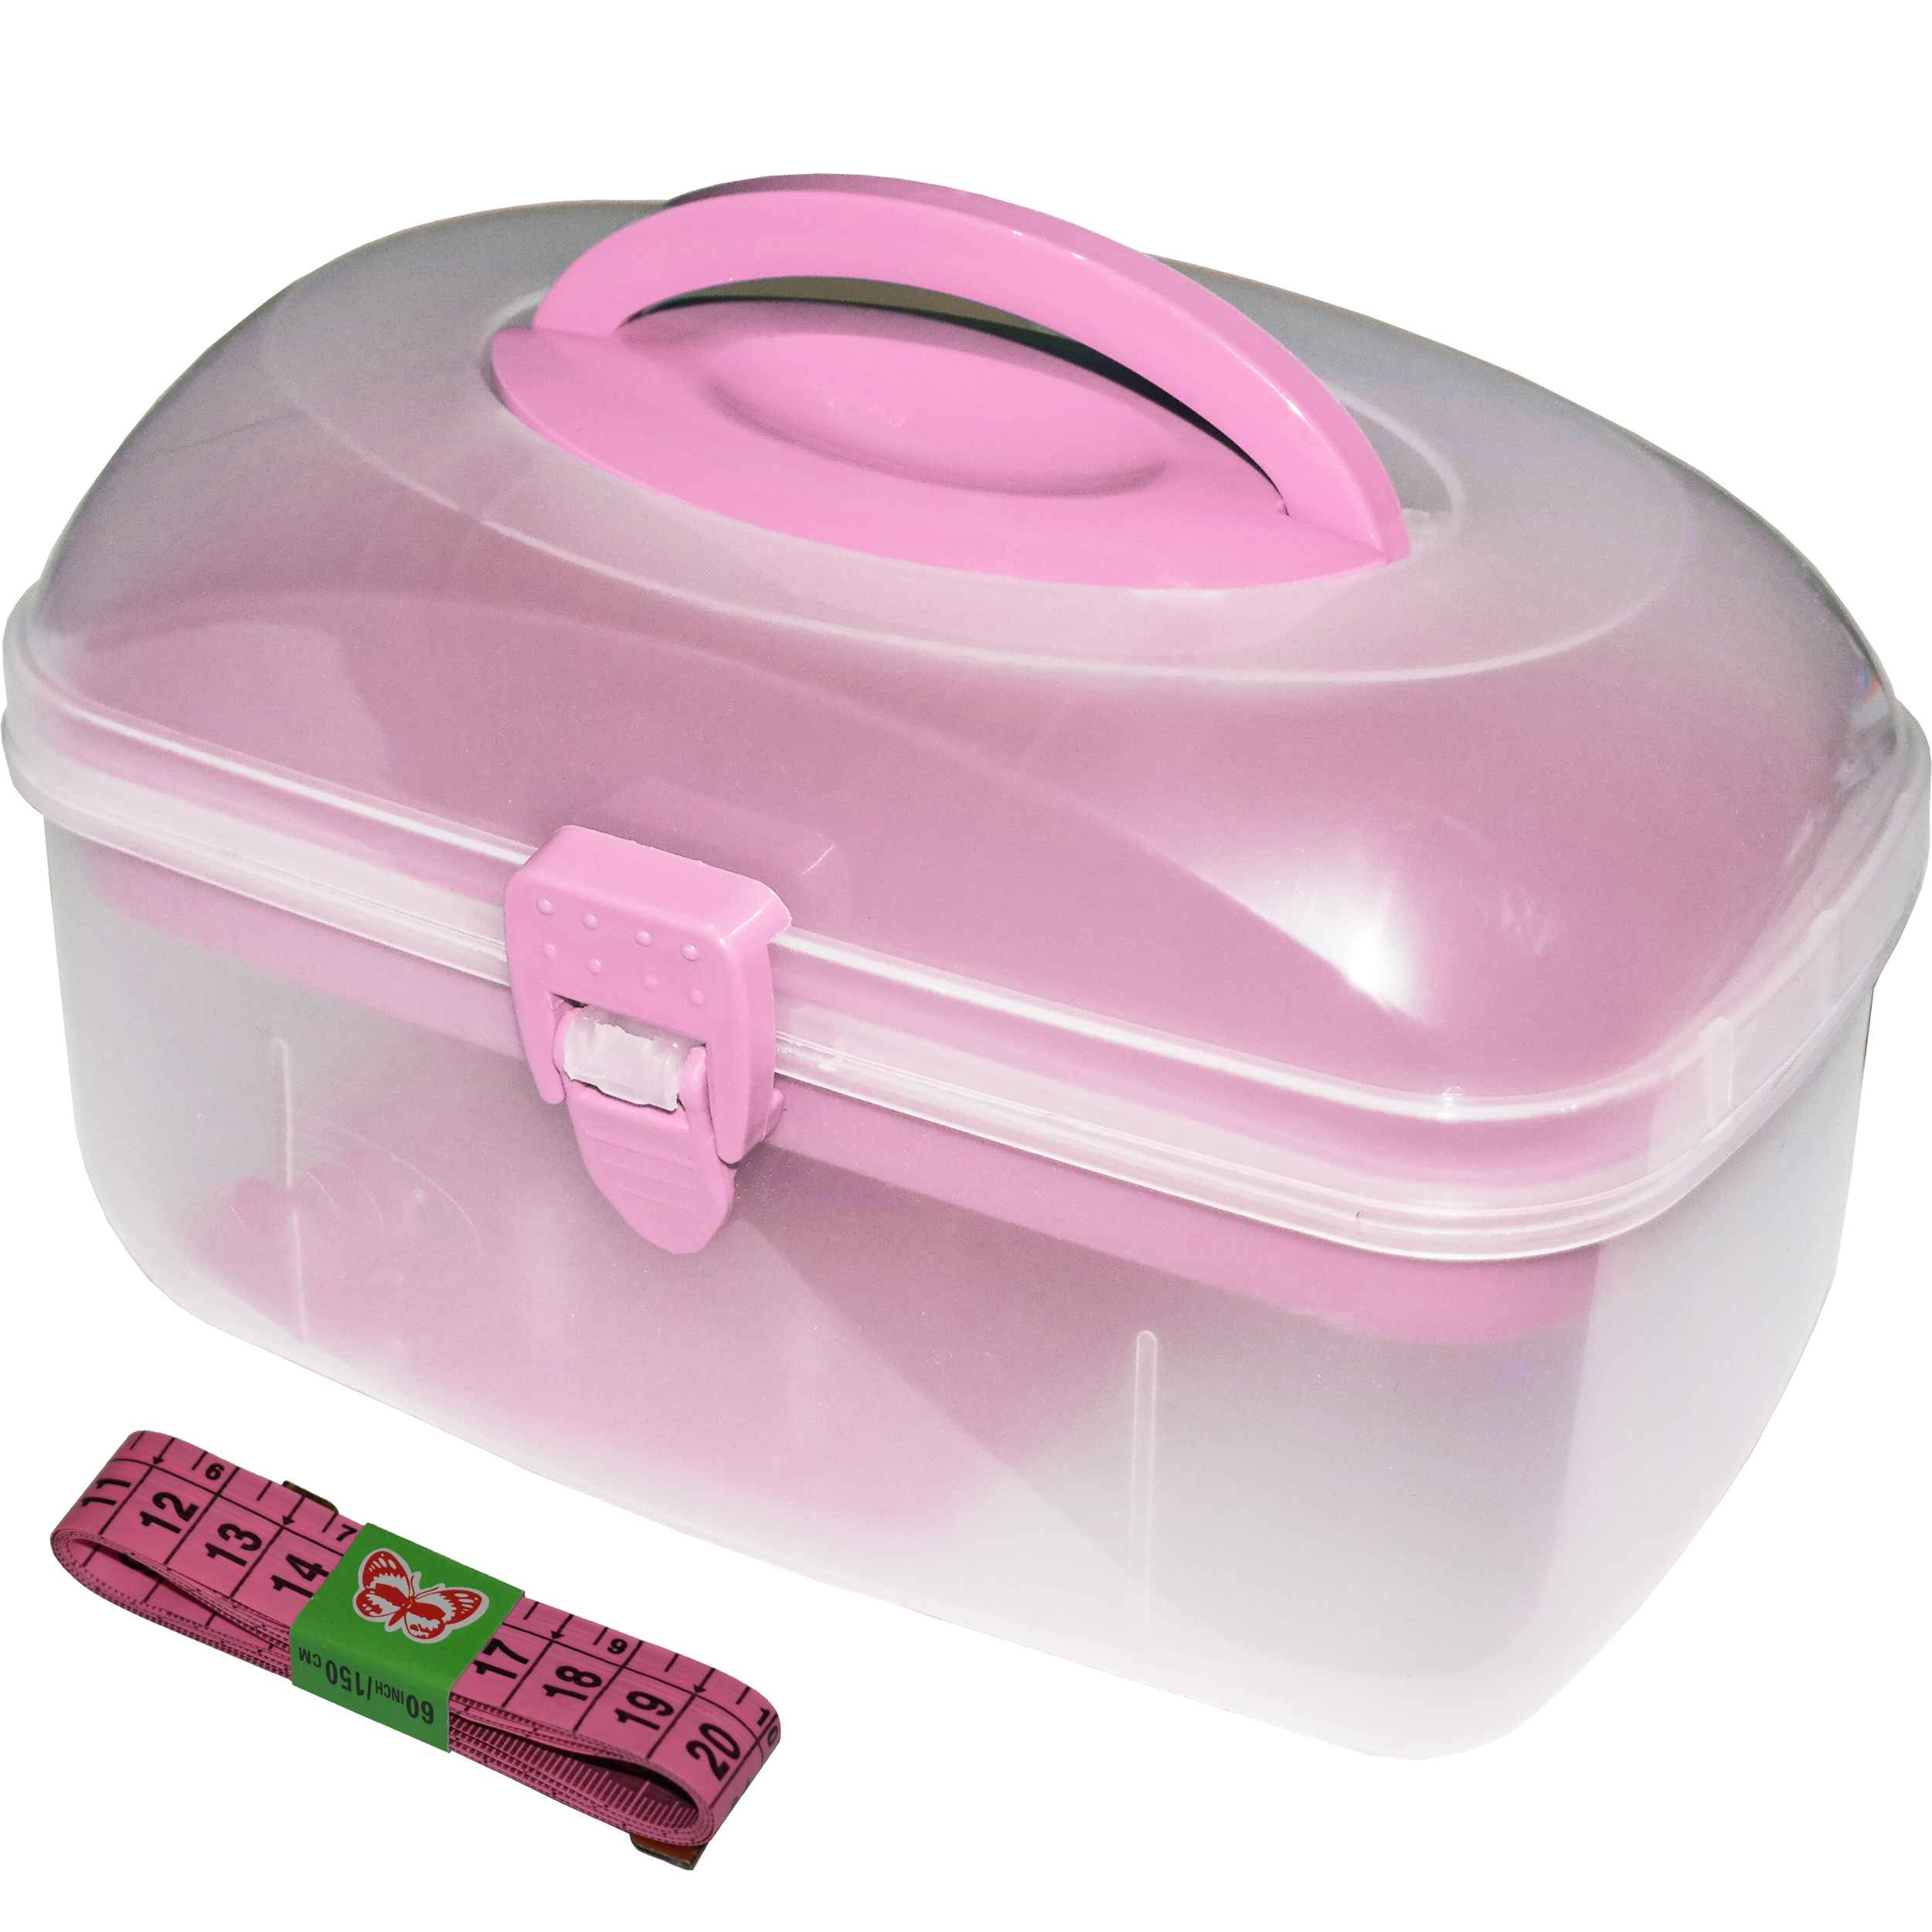 جعبه لوازم خیاطی ابتکار مدل Pink به همراه متر خیاطی